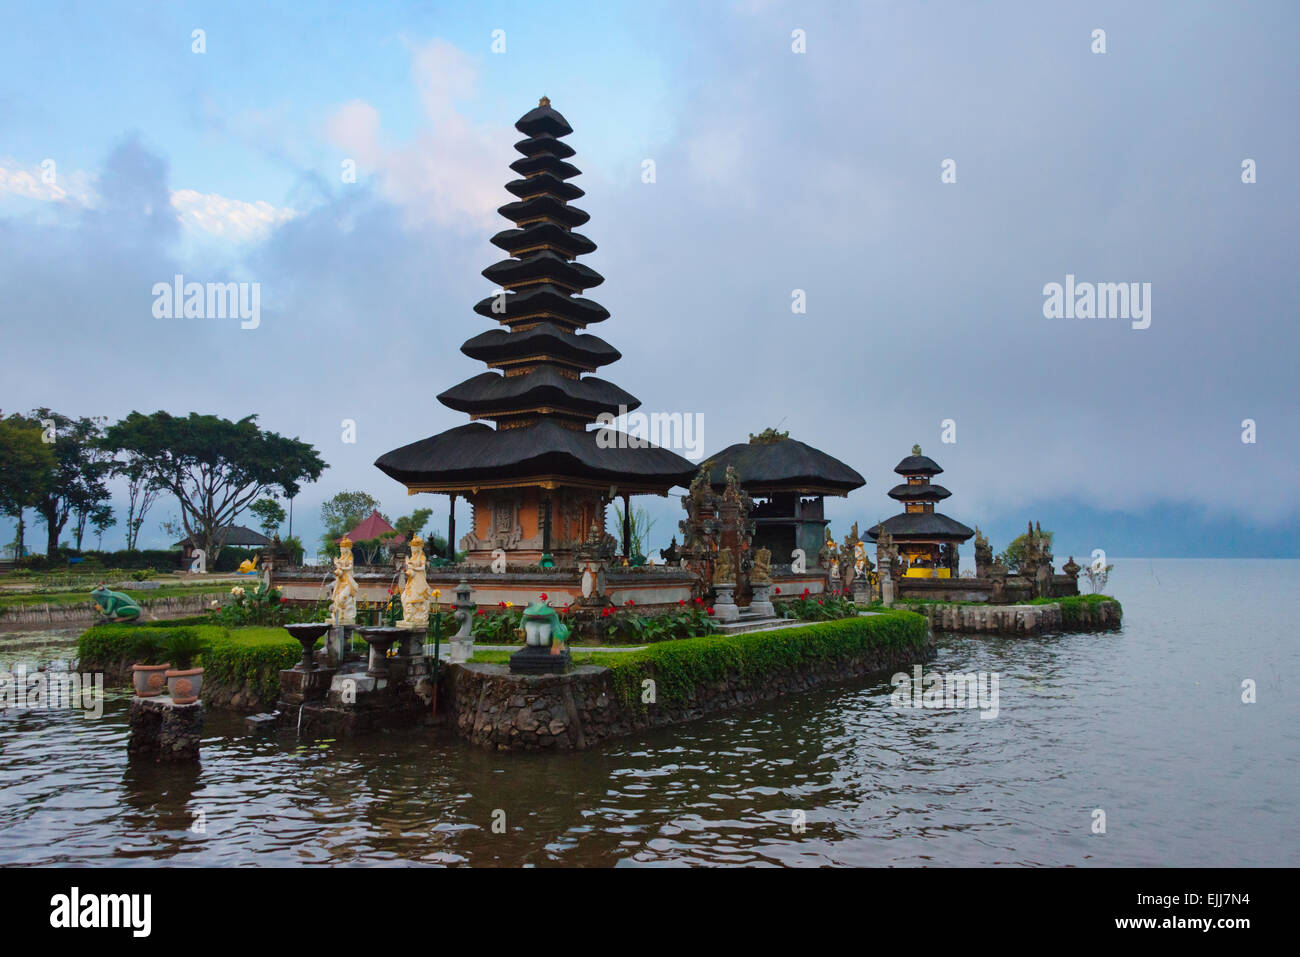 Pura Ulun Danu Bratan water temple, Bali island, Indonesia Stock Photo